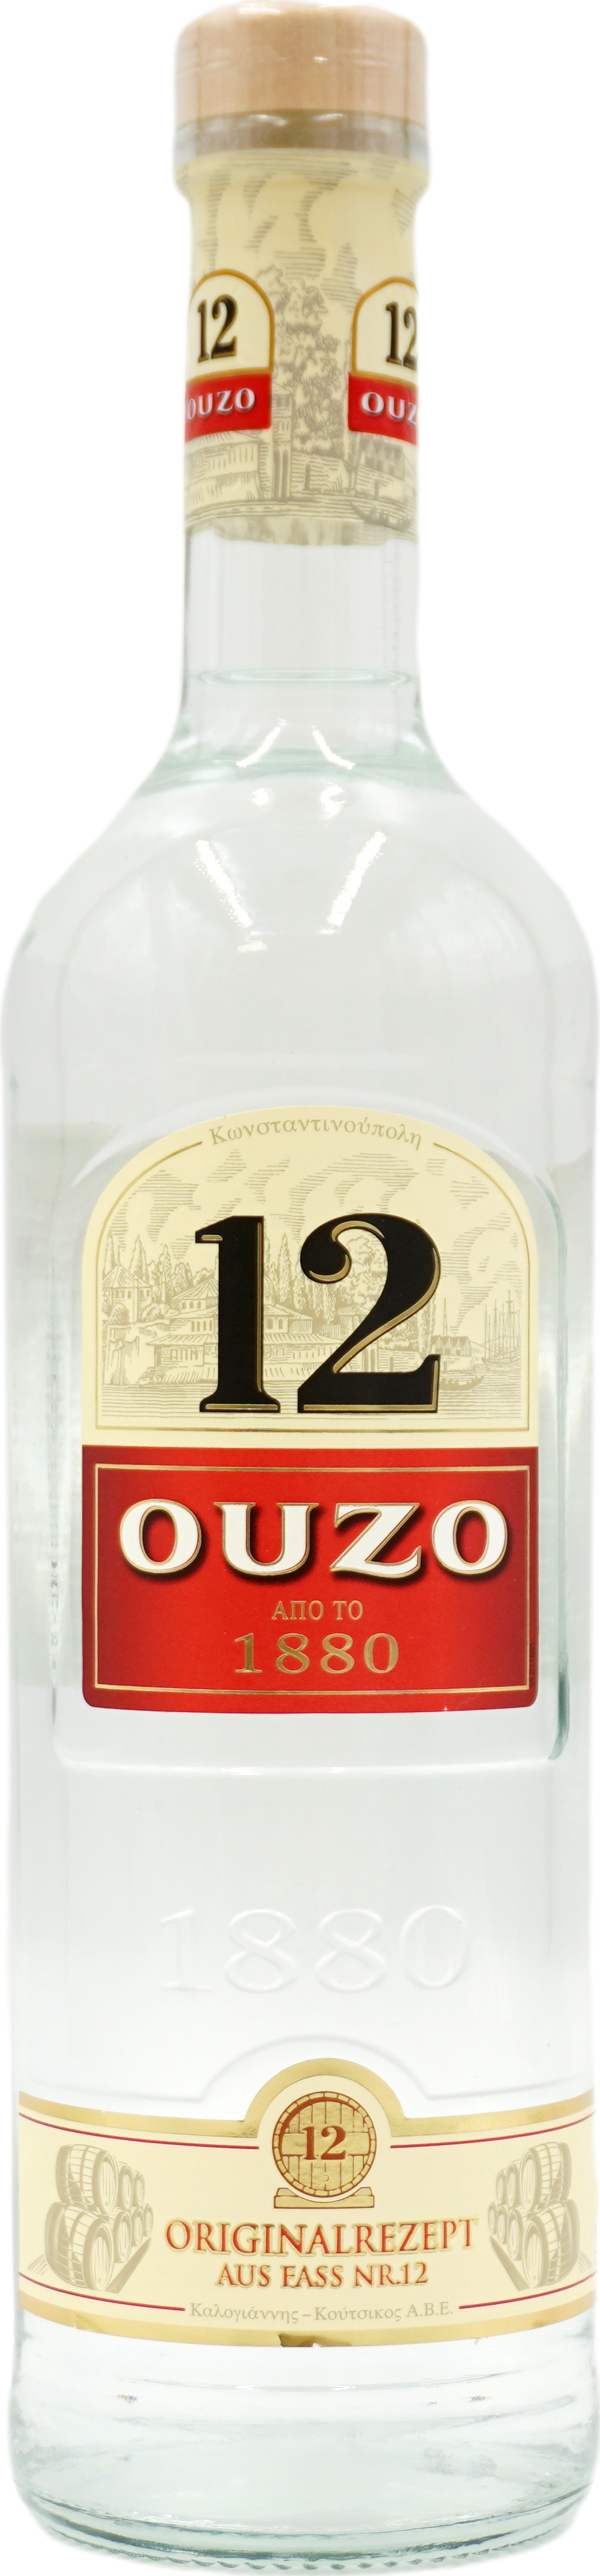 liefern KACHOURI lassen! bestellen Ouzo jetzt online 12 Getränke-Service 38% & |